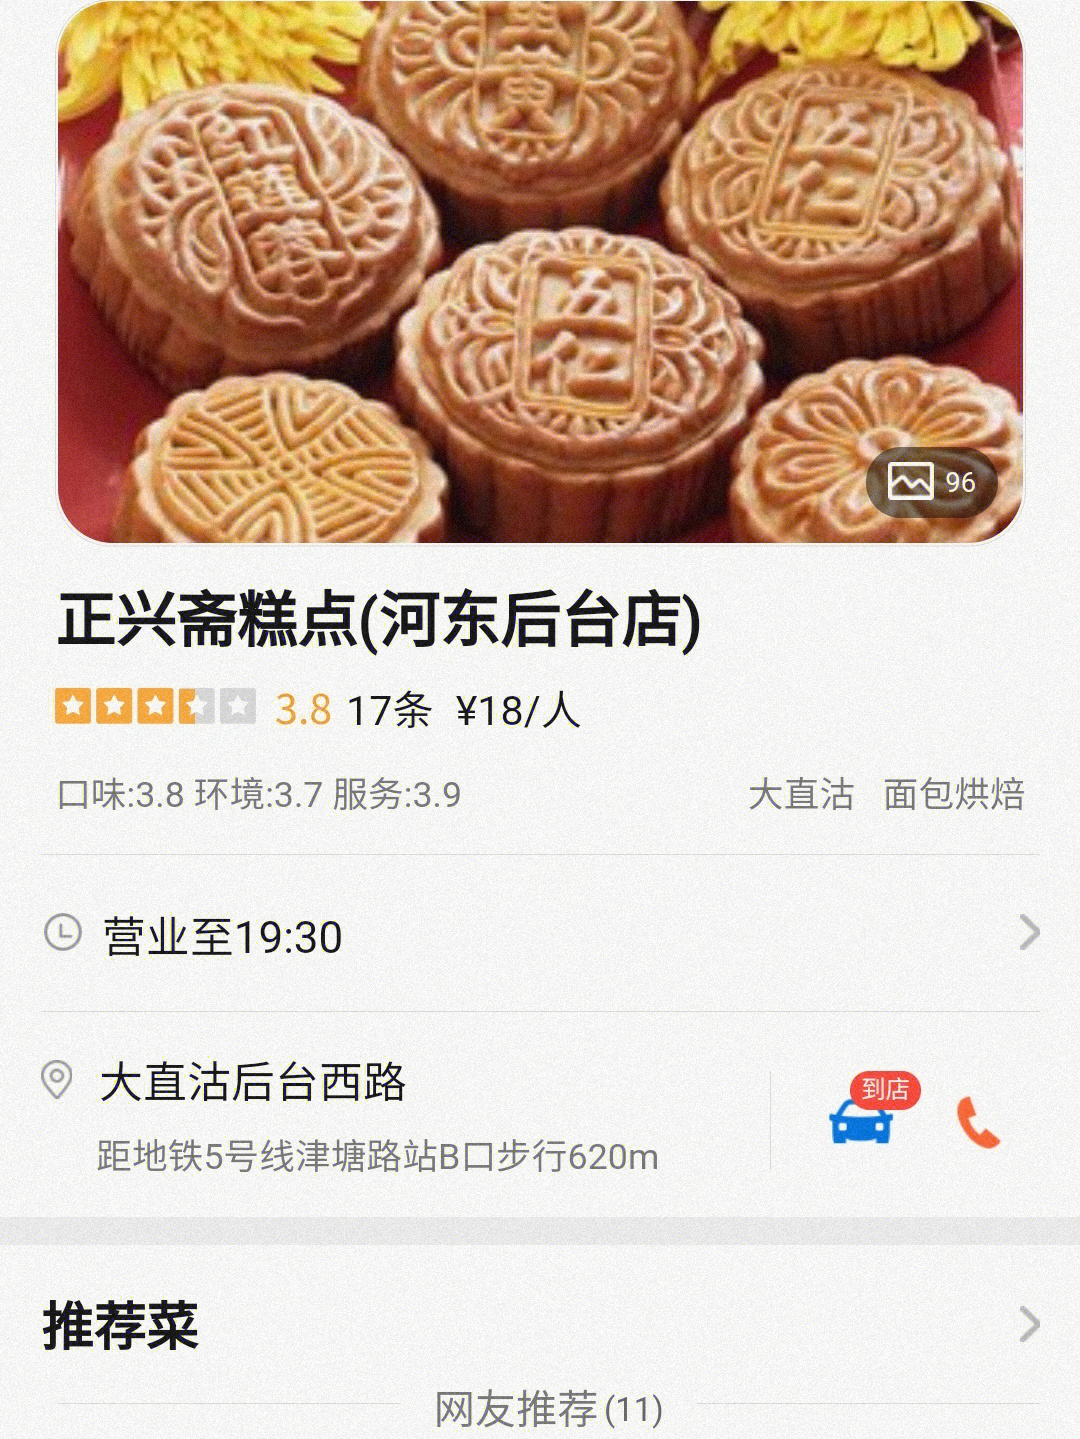 大众美食网_大众点评网团购美食_广州美食大众点评网